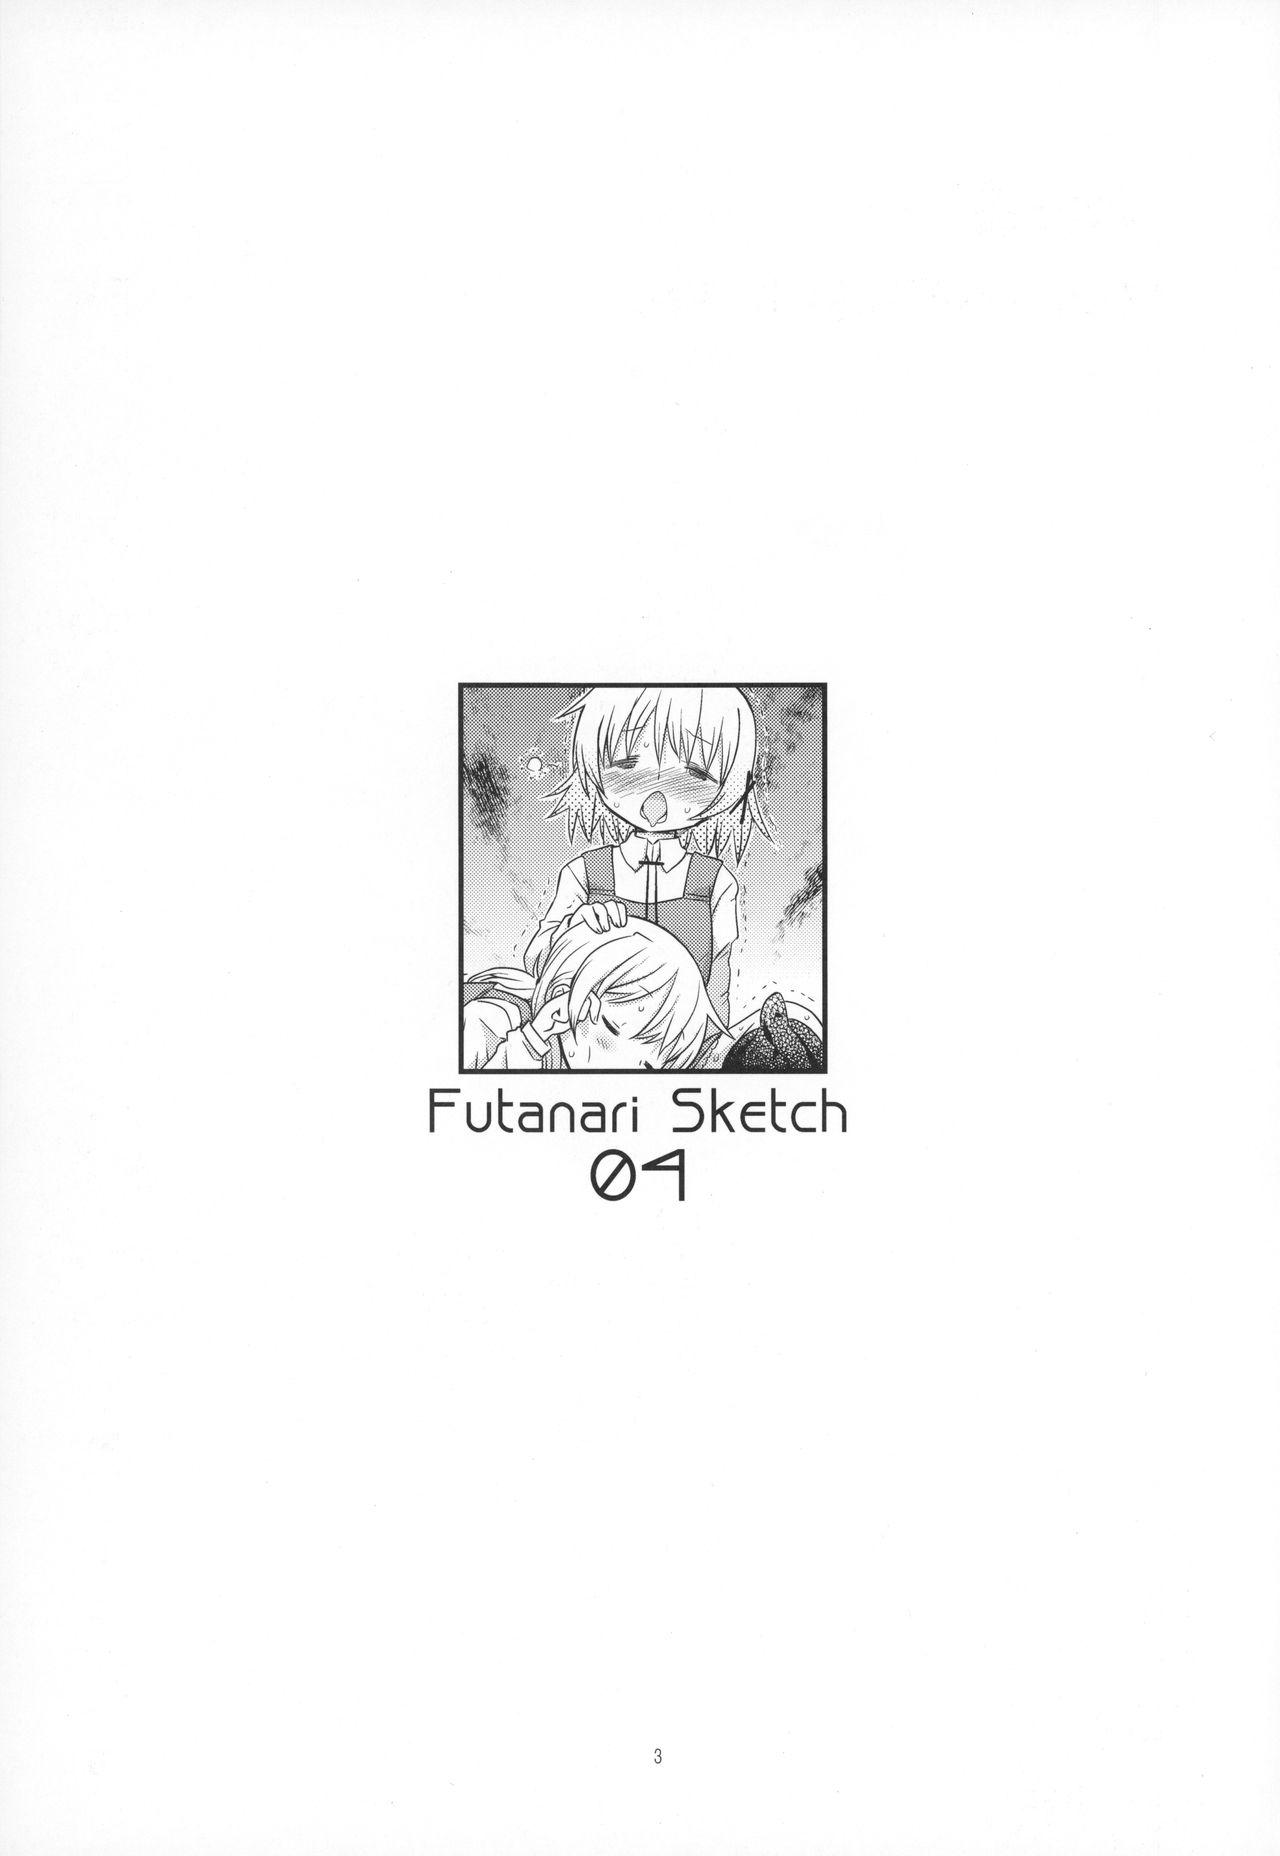 Dancing Futanari Sketch 4 - Hidamari sketch Nurugel - Page 2